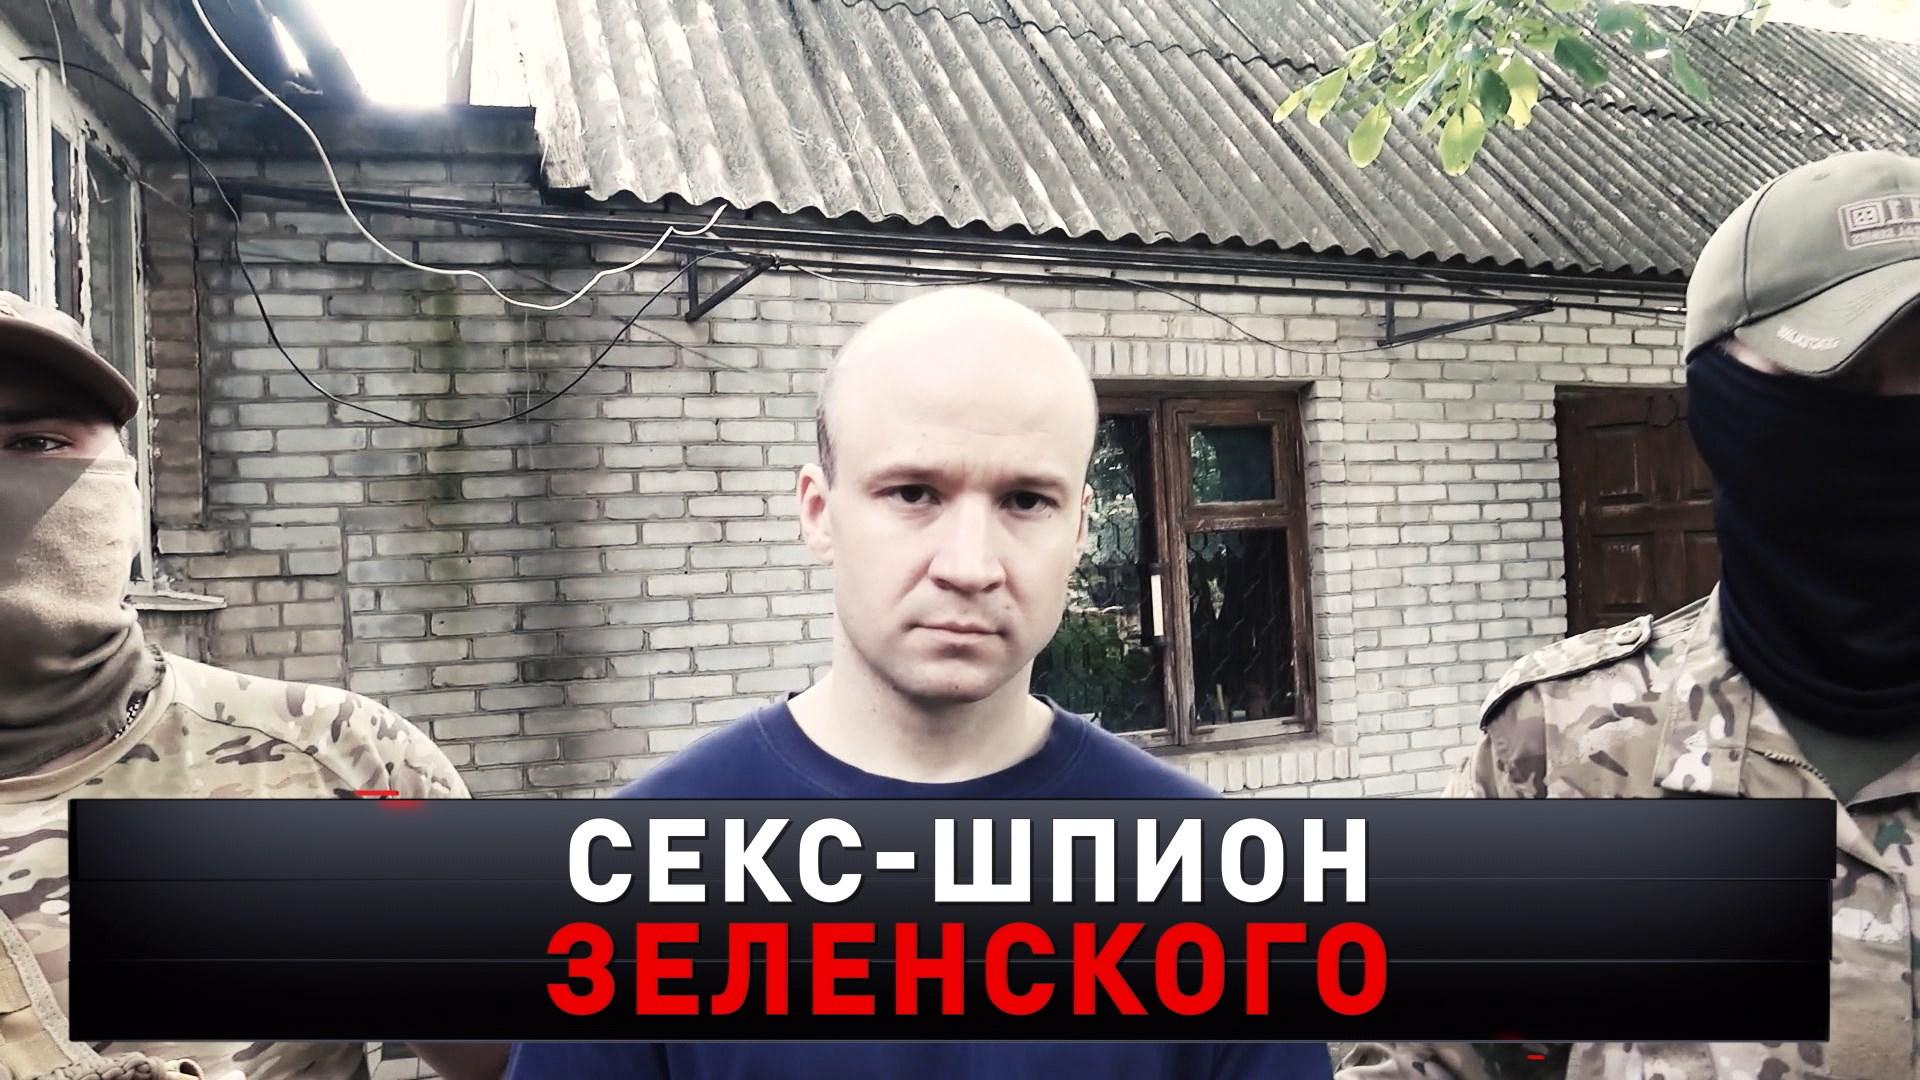 «Секс-шпион Зеленского» | Как украинский террорист погорел на женщинах? | «Новые русские сенсации»